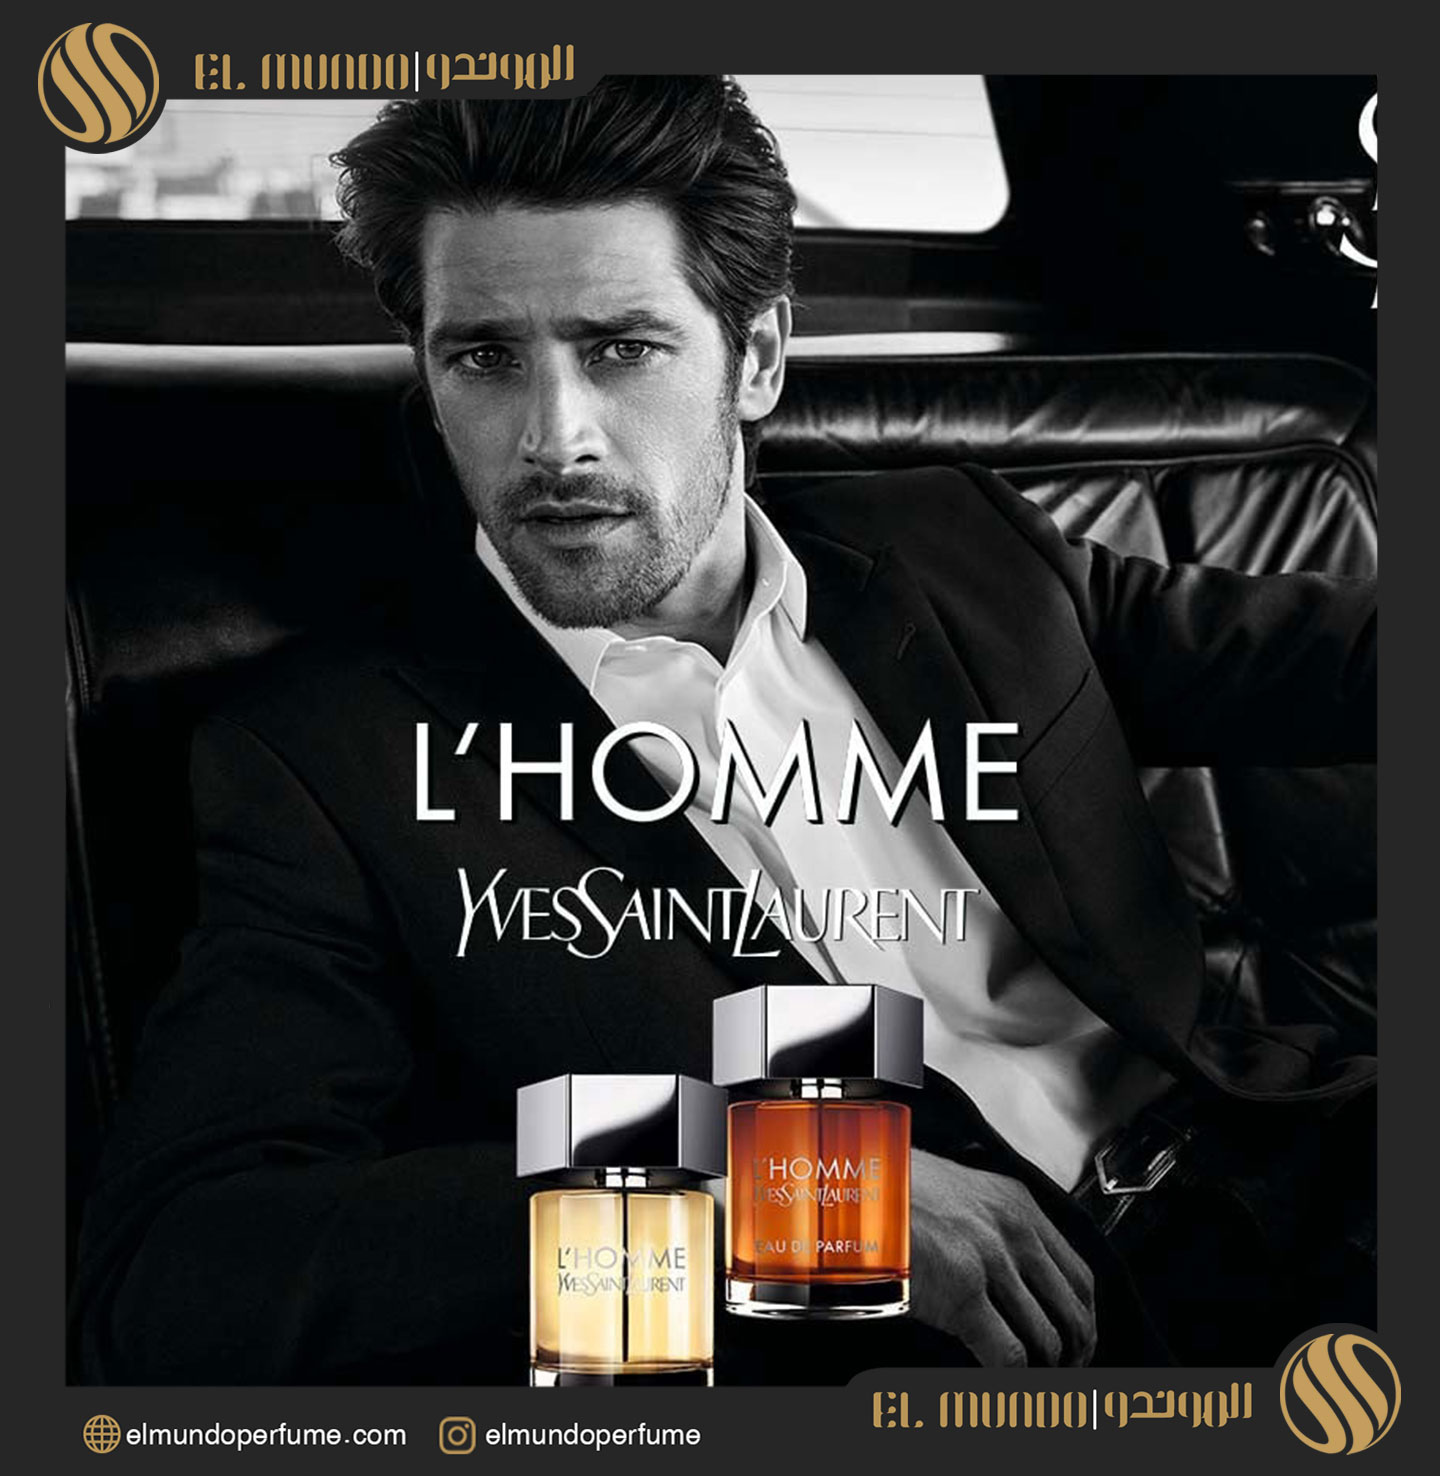 LHomme Eau de Parfum Yves Saint Laurent for men 1 - ادو پرفیوم مردانه ايو سنت لورنت له هوم